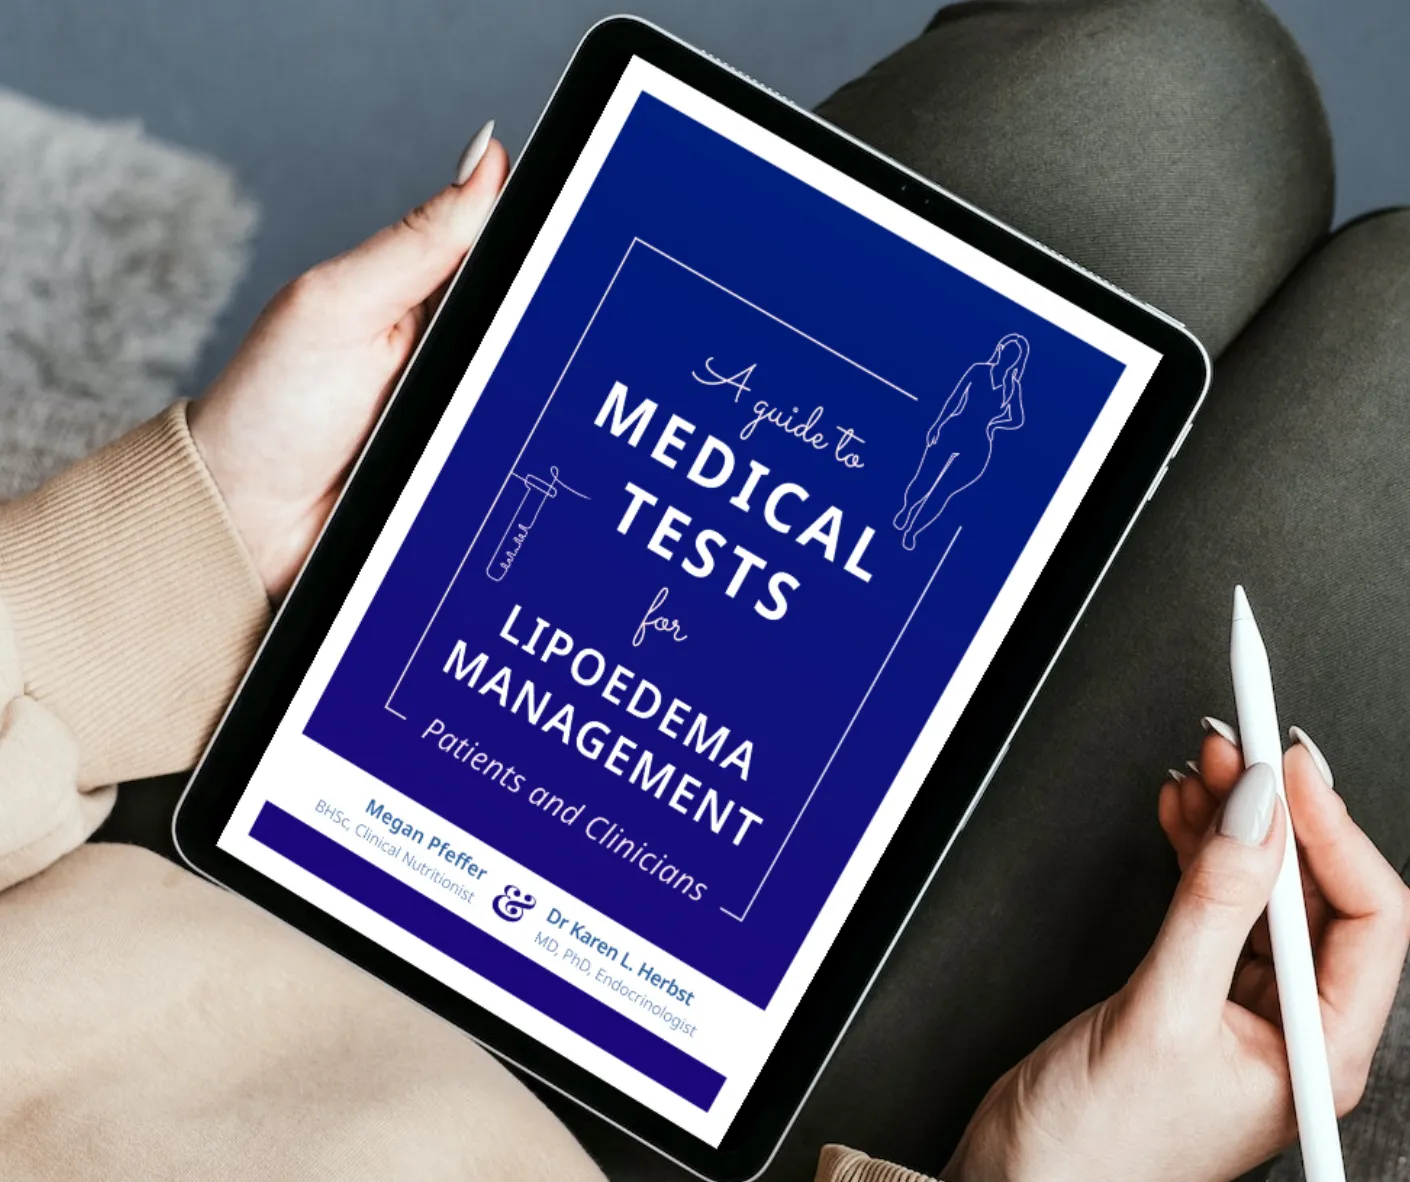 Medical tests ebook for lipoedema management 